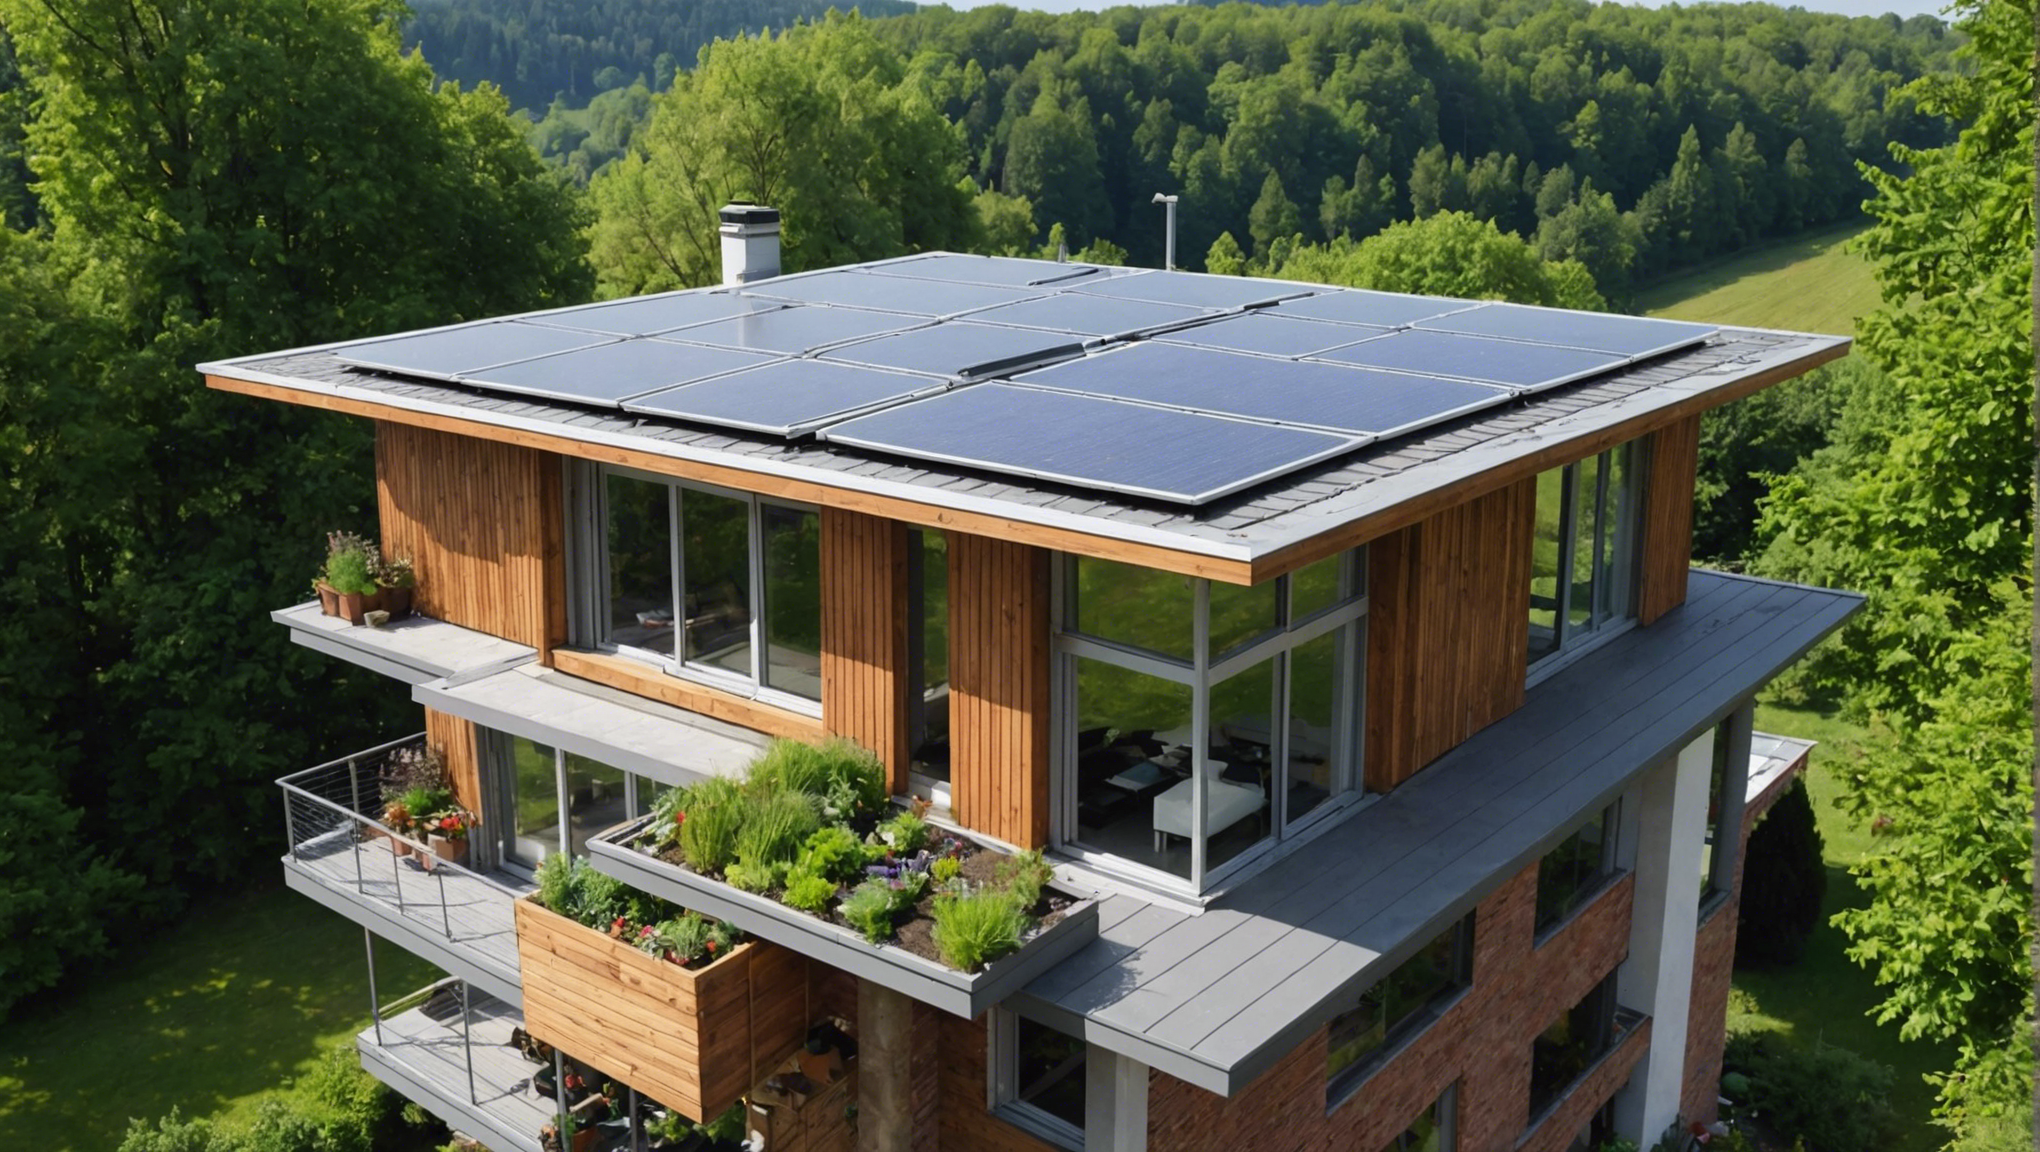 découvrez comment obtenir la prime rénov toiture pour une transformation écologique de votre toit et profiter d'un financement avantageux pour des travaux de rénovation.